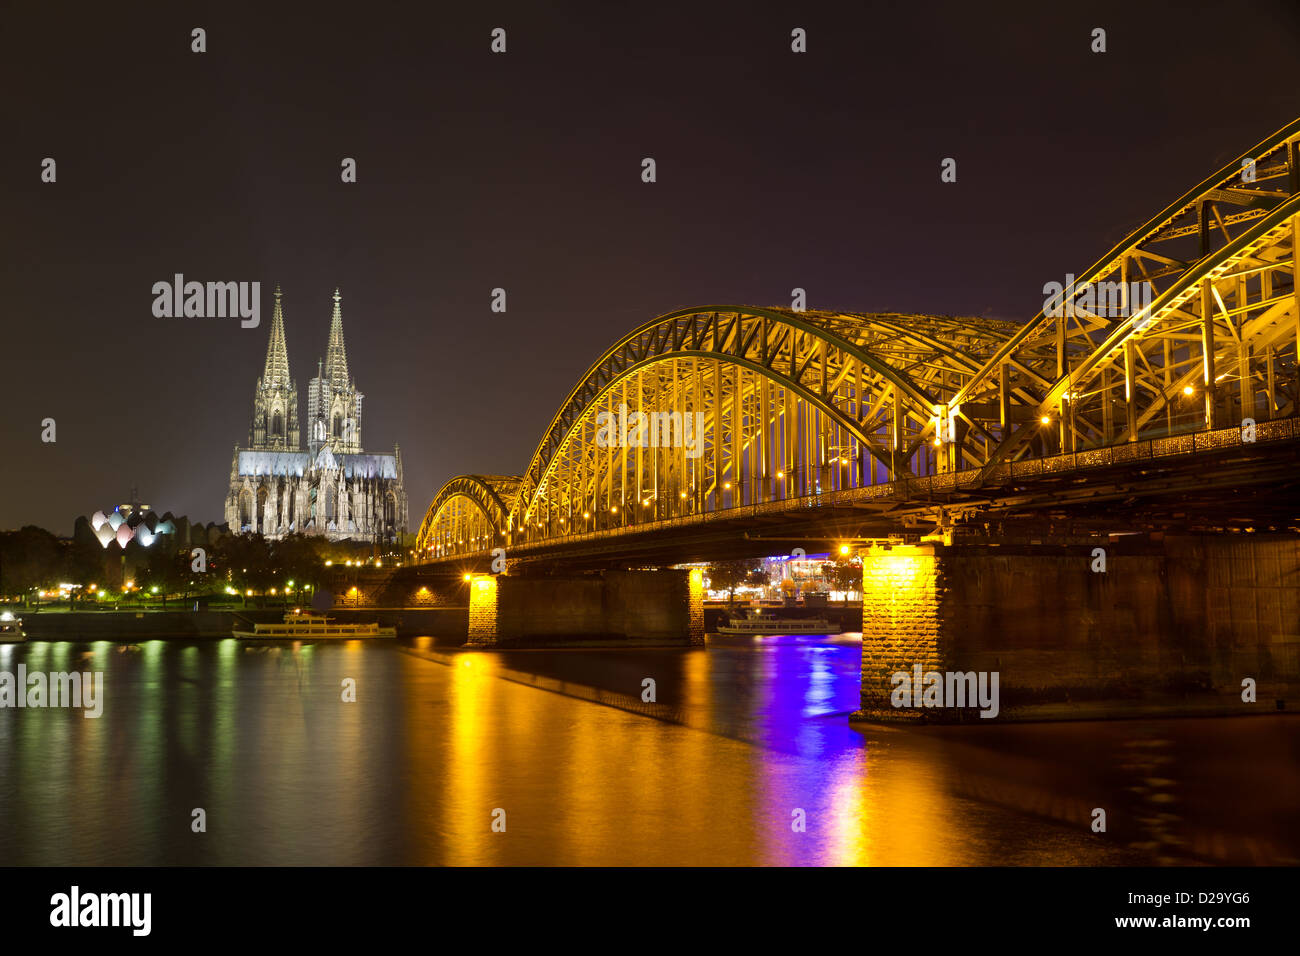 La cathédrale de Cologne et de Hohenzollern Bridge at night, Cologne (Köln), Allemagne Banque D'Images